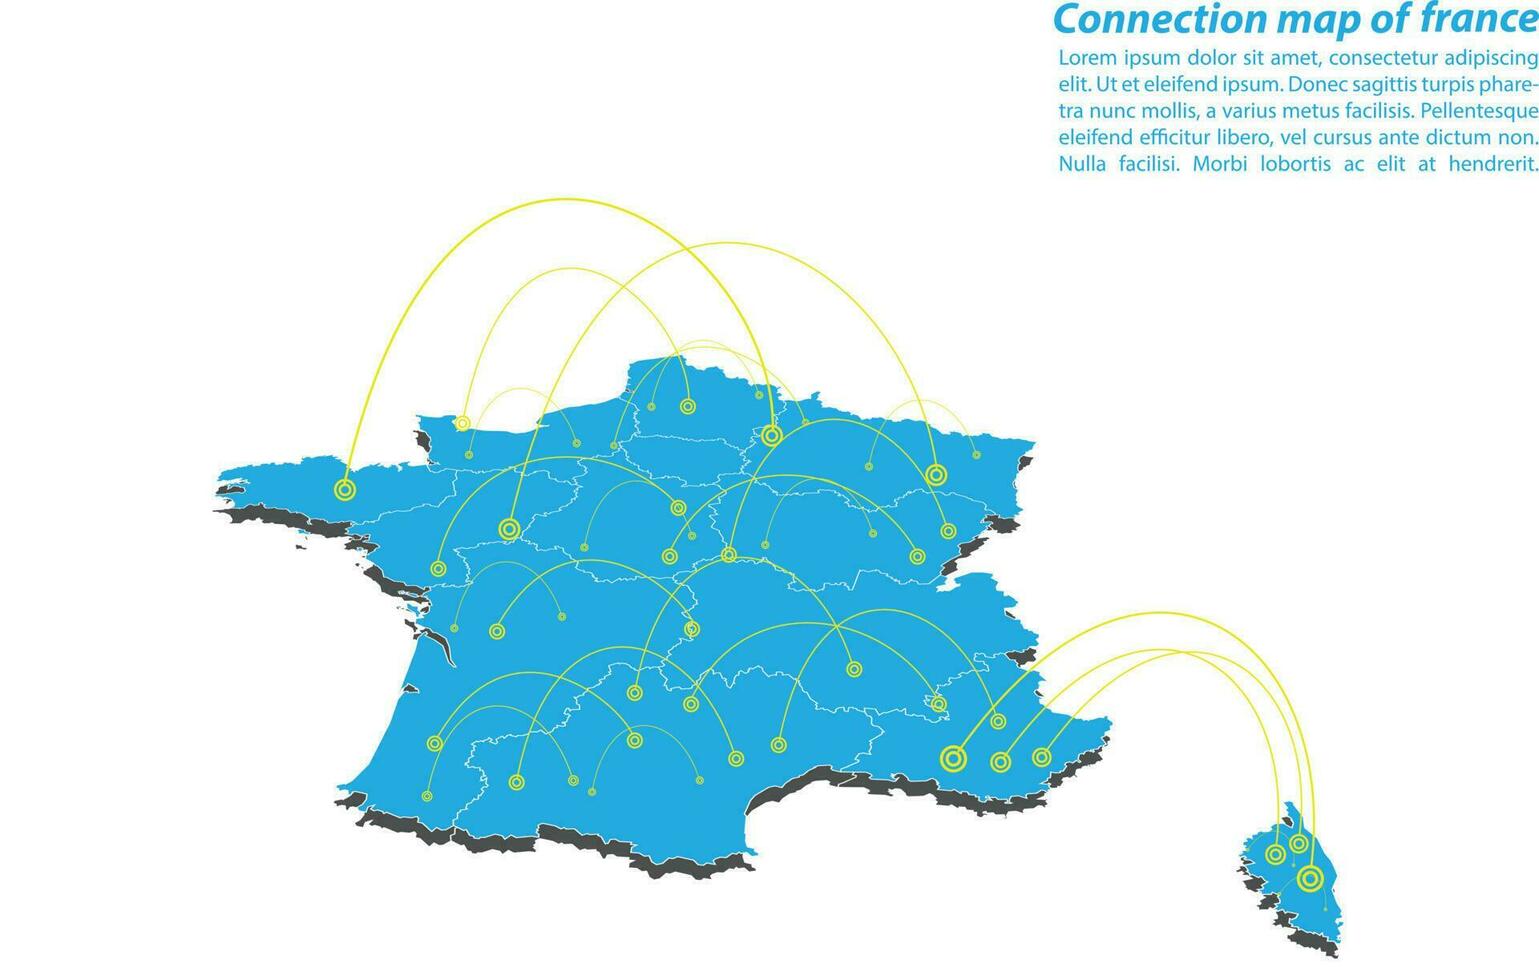 moderno diseño de red de conexiones de mapas de francia, el mejor concepto de Internet del negocio de mapas de francia a partir de series de conceptos, punto de mapa y composición de líneas. mapa infográfico. ilustración vectorial vector